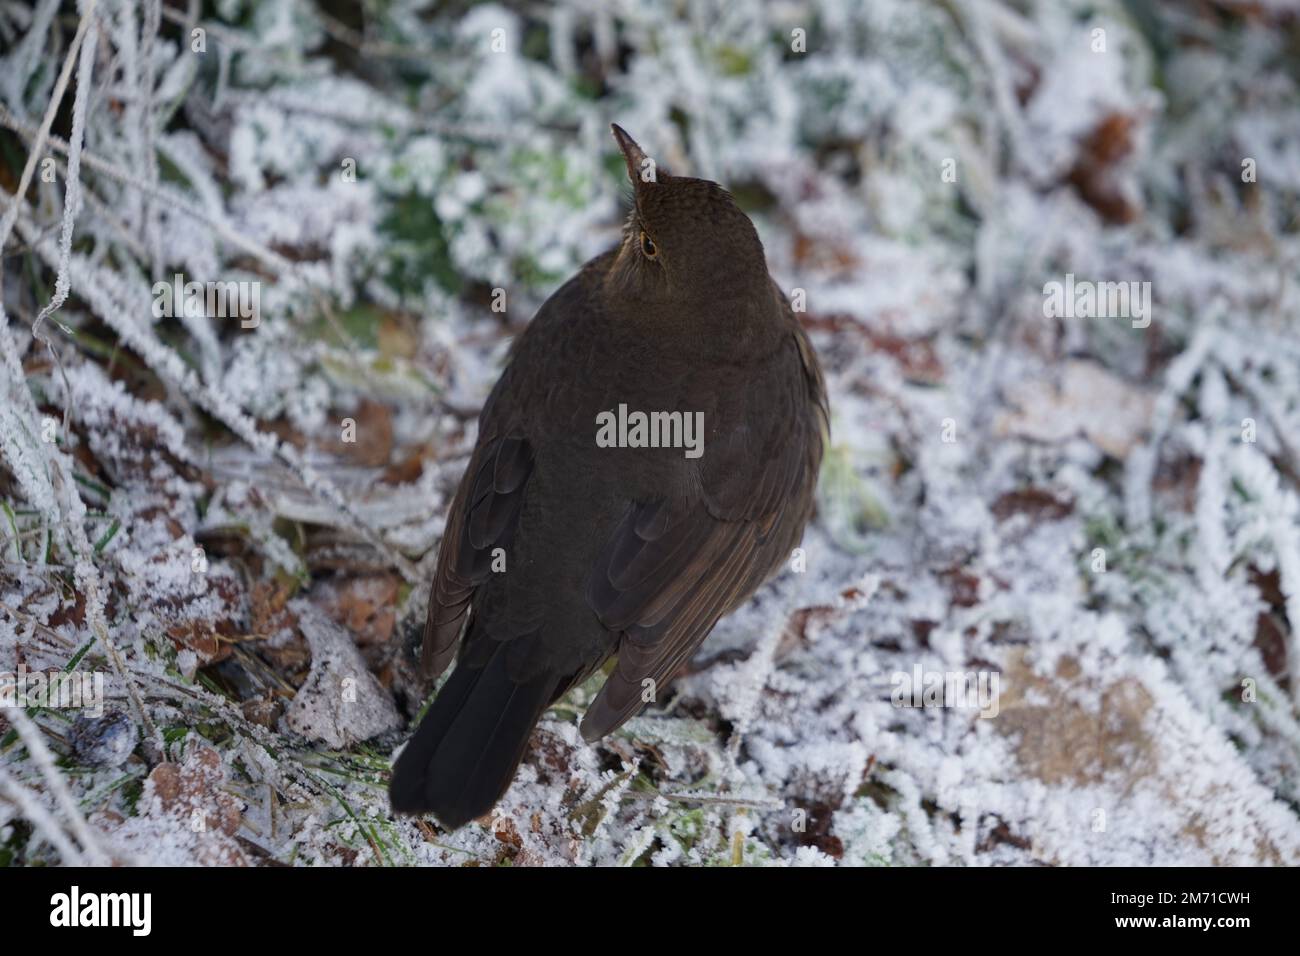 Oiseau-noir eurasien sur le Bush avec neige en hiver.oiseau-noir commun femelle (Turdus merula) perché sur une souche d'arbre, isolé contre un fond gelé Banque D'Images